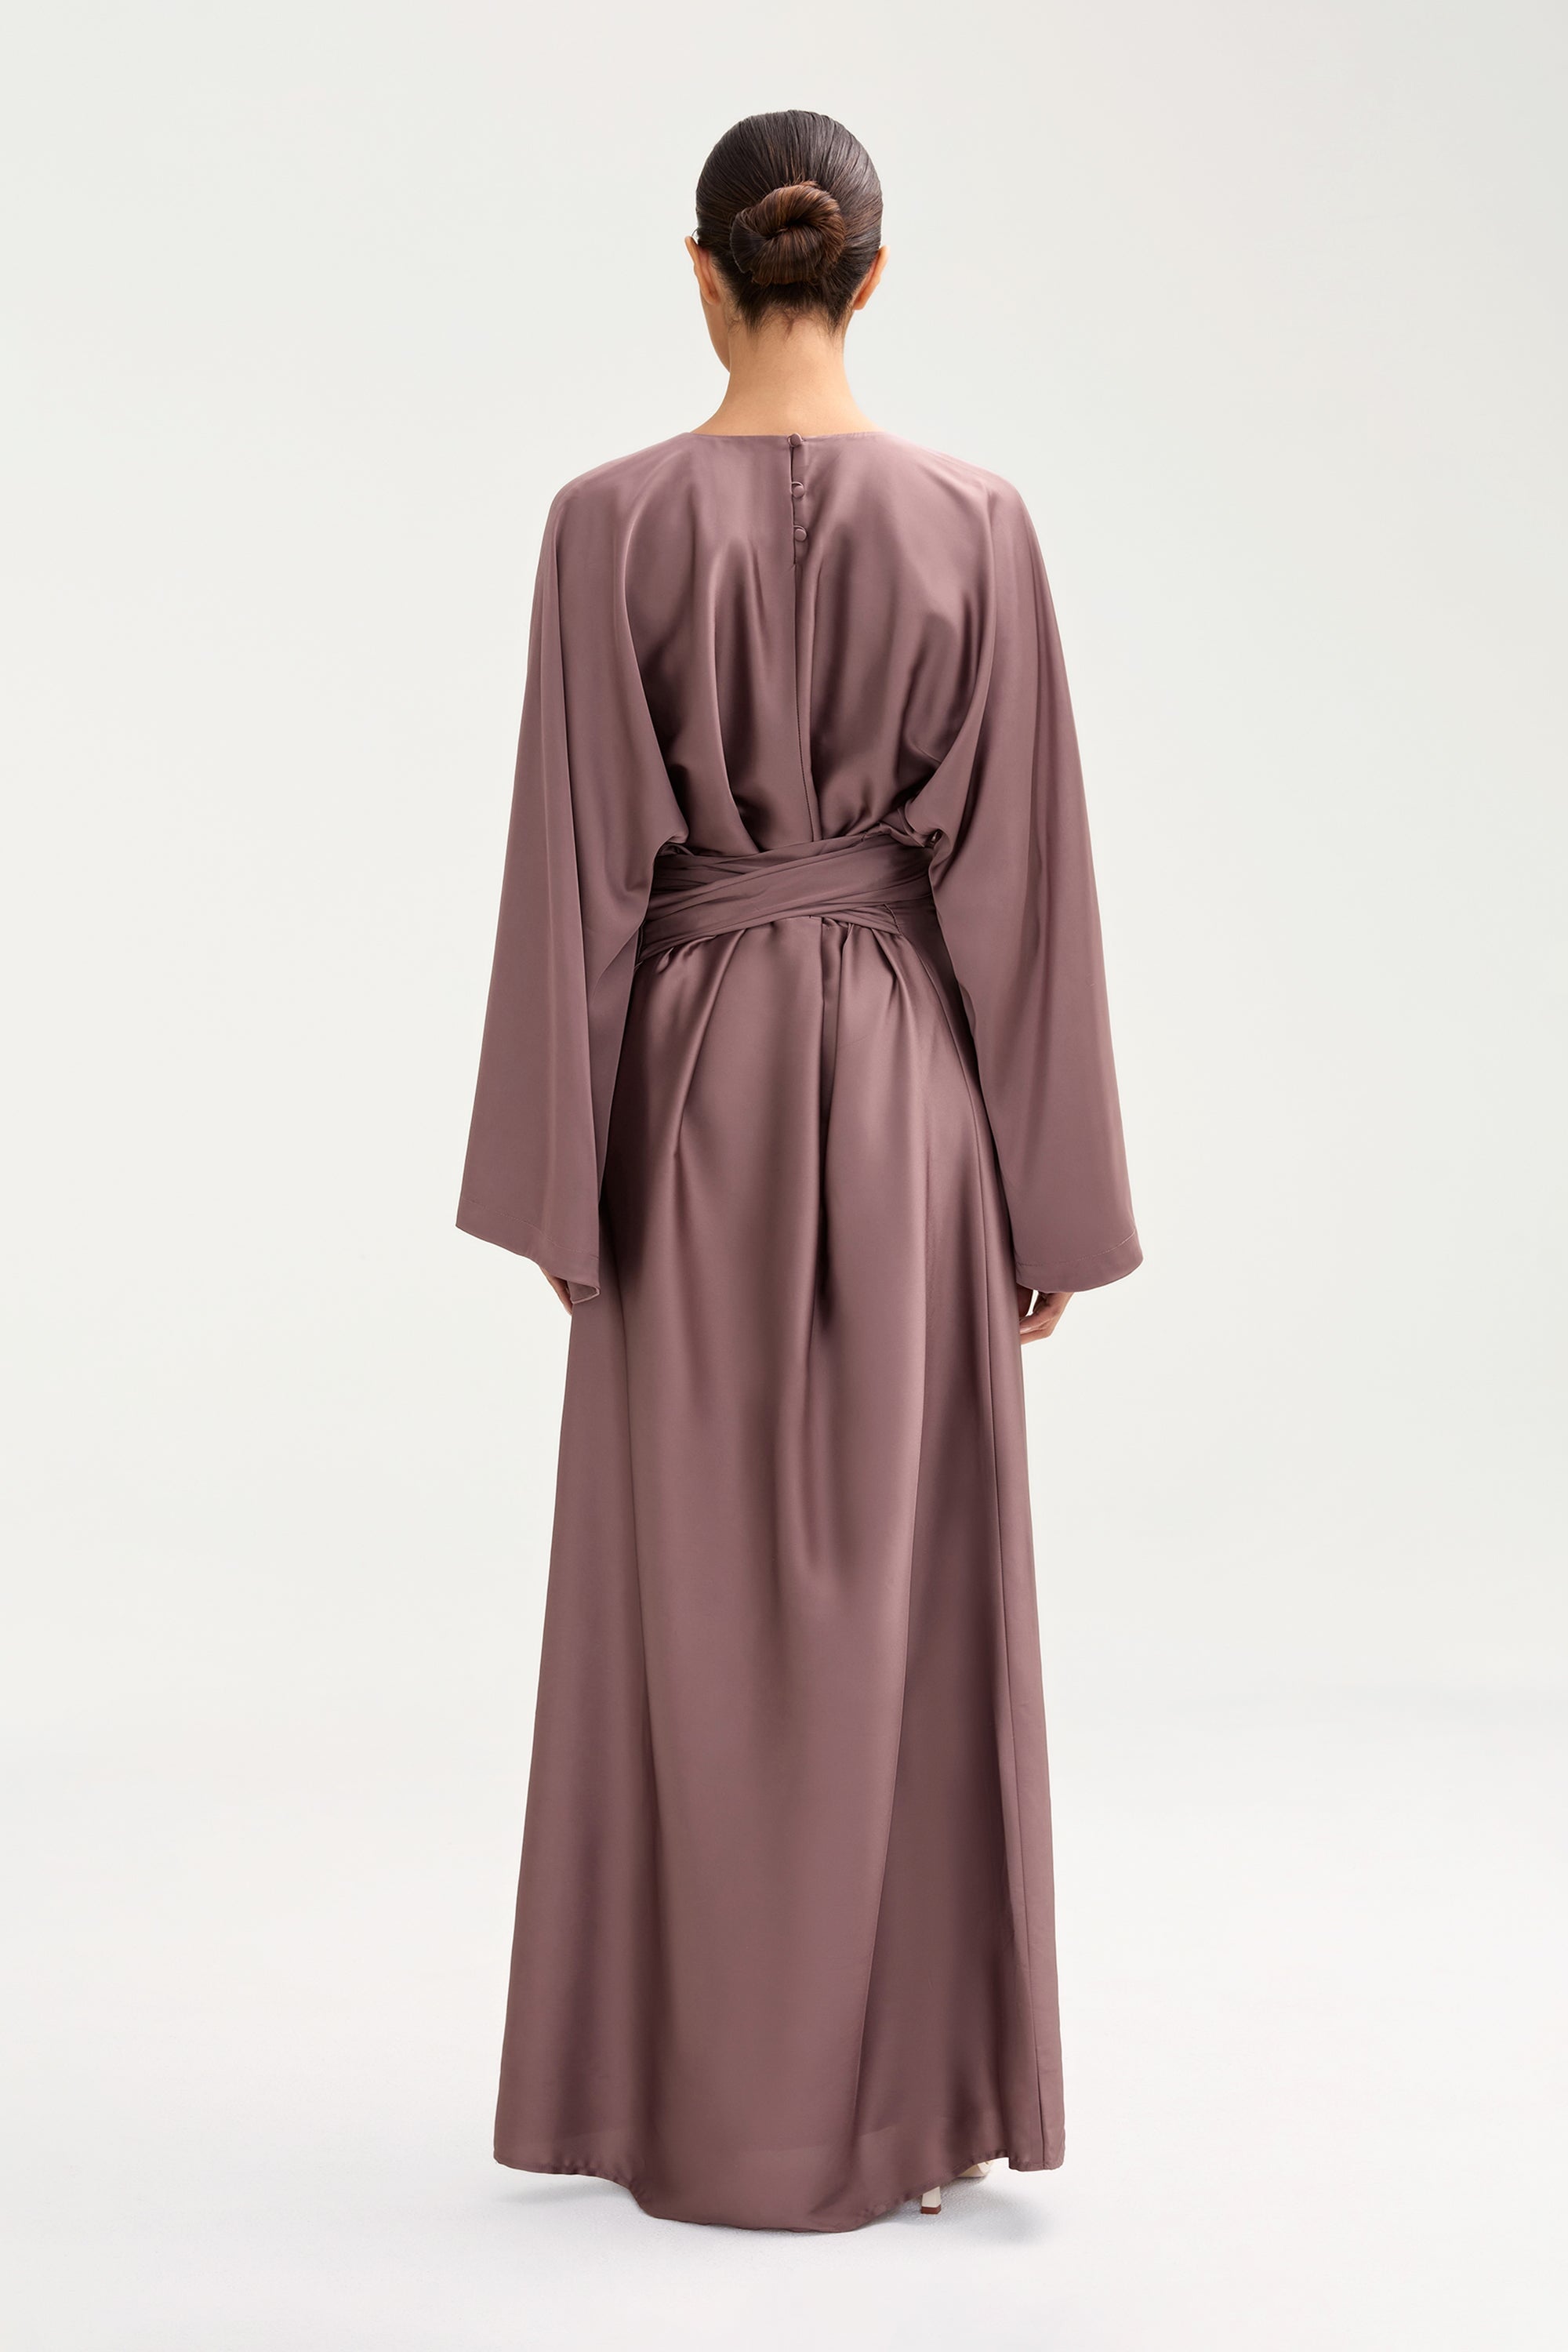 Batool Satin Maxi Dress - Deep Taupe Clothing Veiled 